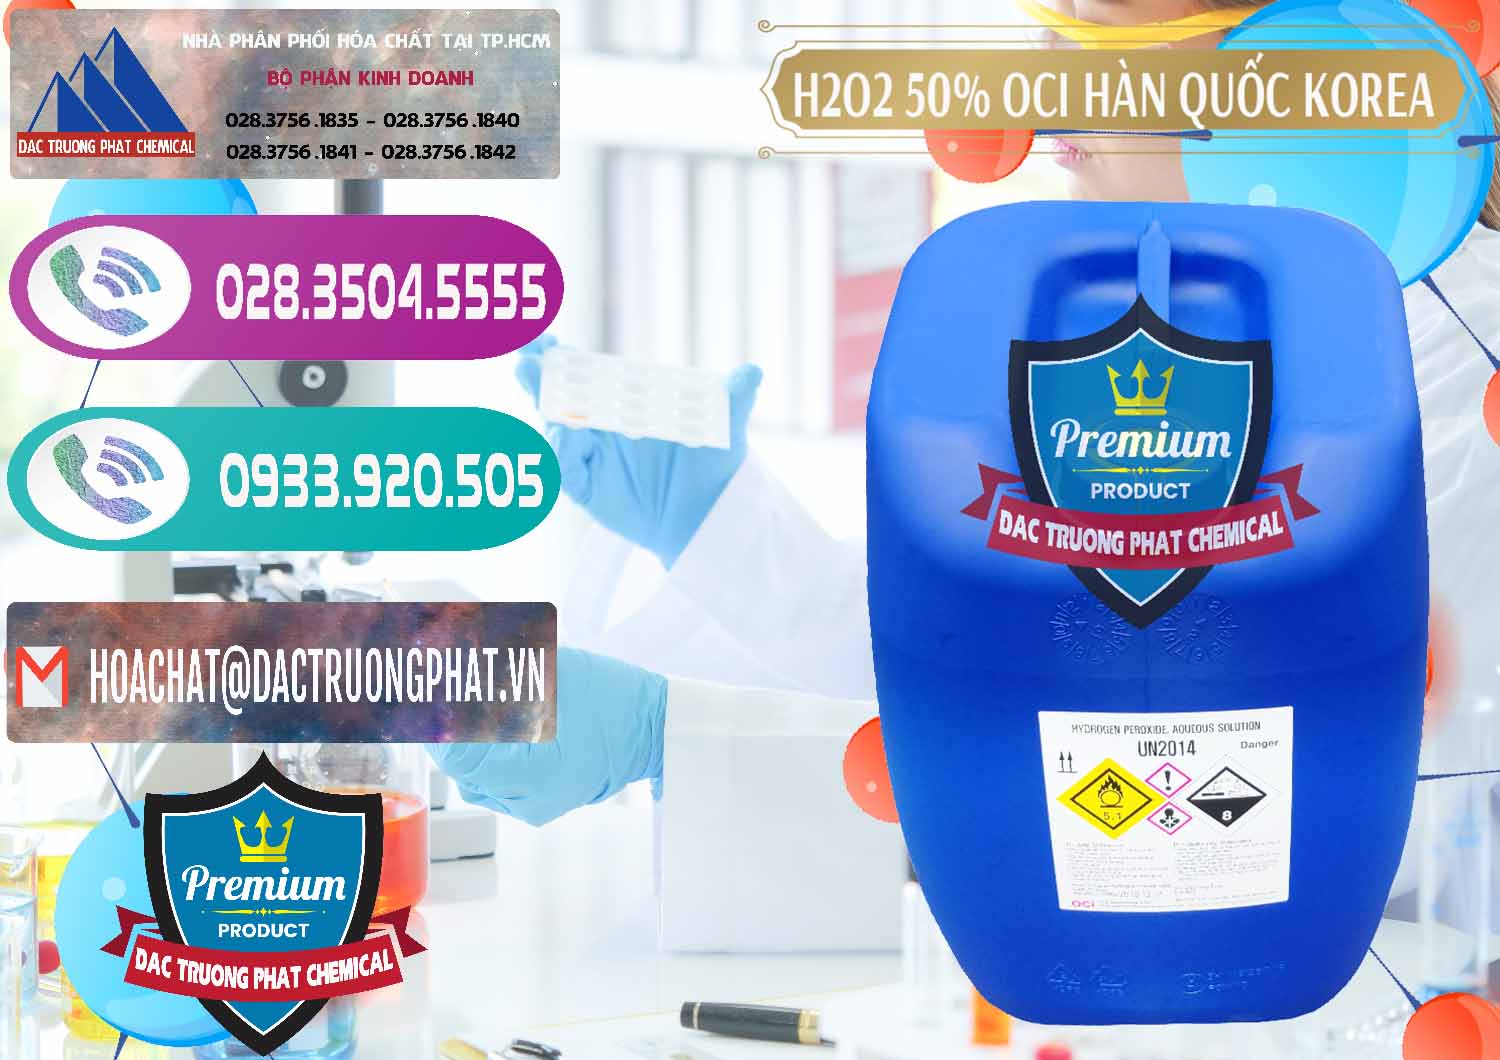 Cty chuyên bán ( cung ứng ) H2O2 - Hydrogen Peroxide 50% OCI Hàn Quốc Korea - 0075 - Đơn vị nhập khẩu & phân phối hóa chất tại TP.HCM - hoachatxulynuoc.com